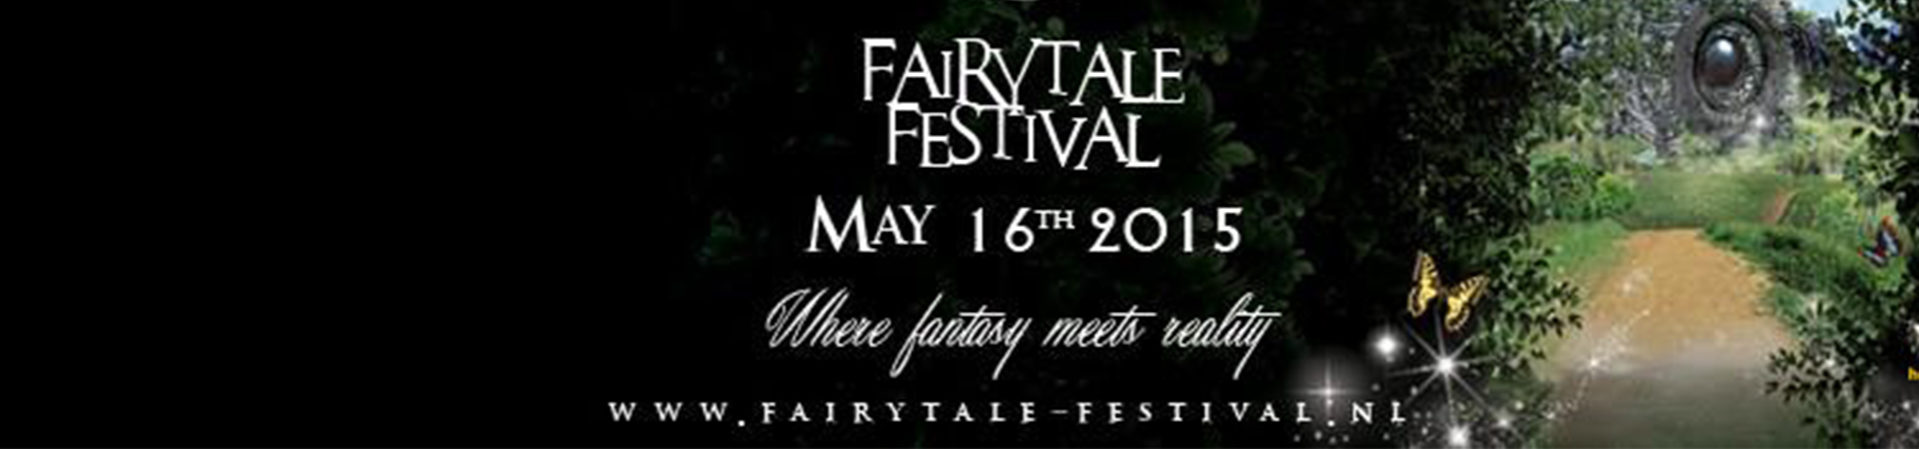 fairytale festival 2015 1920x450